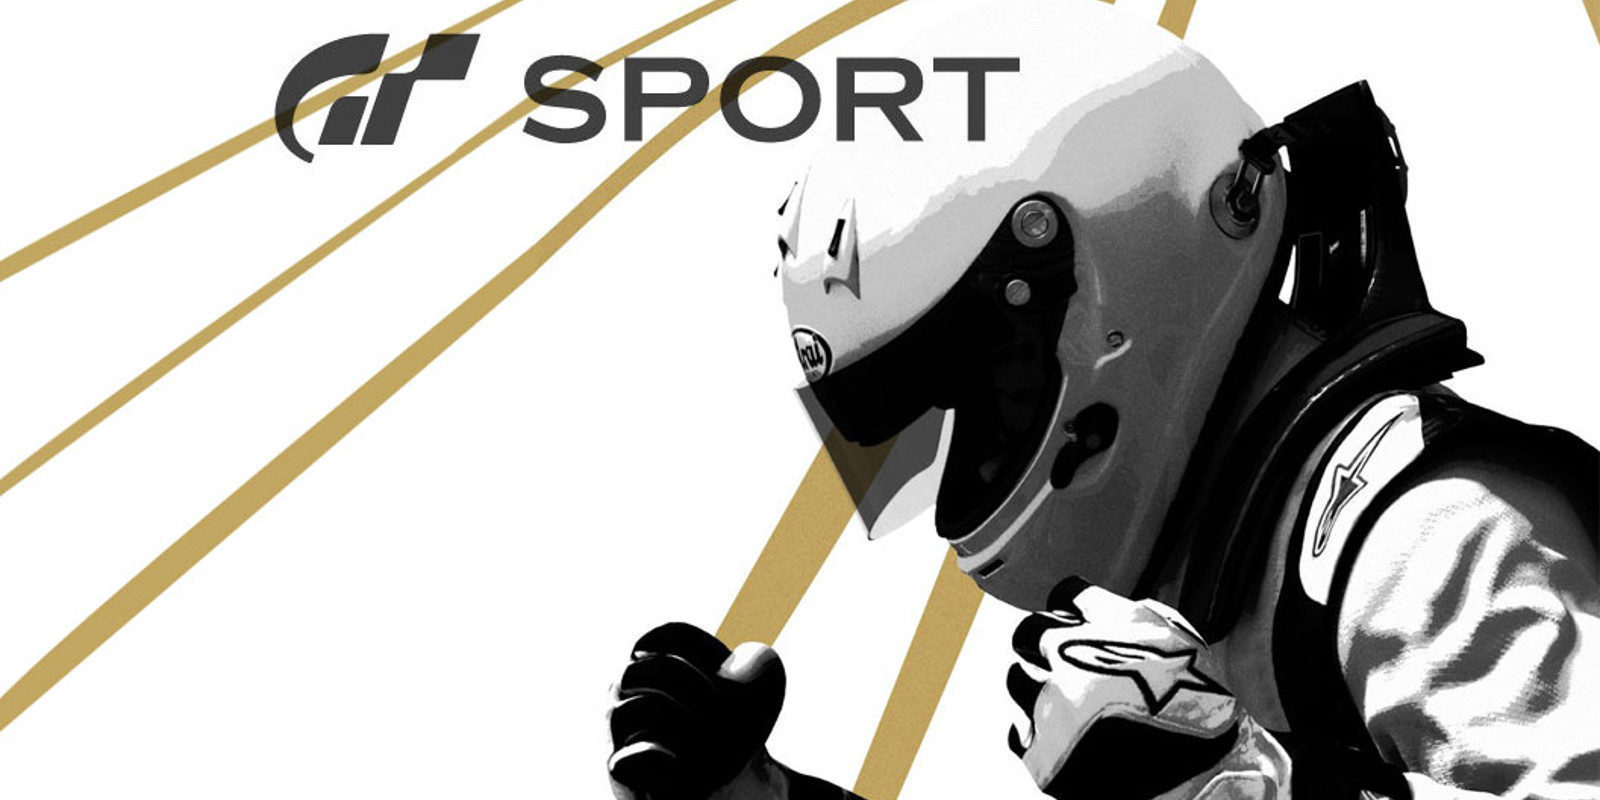 Ofertas Black Friday: Monitor 4k y 'GT Sport' por 30 euros